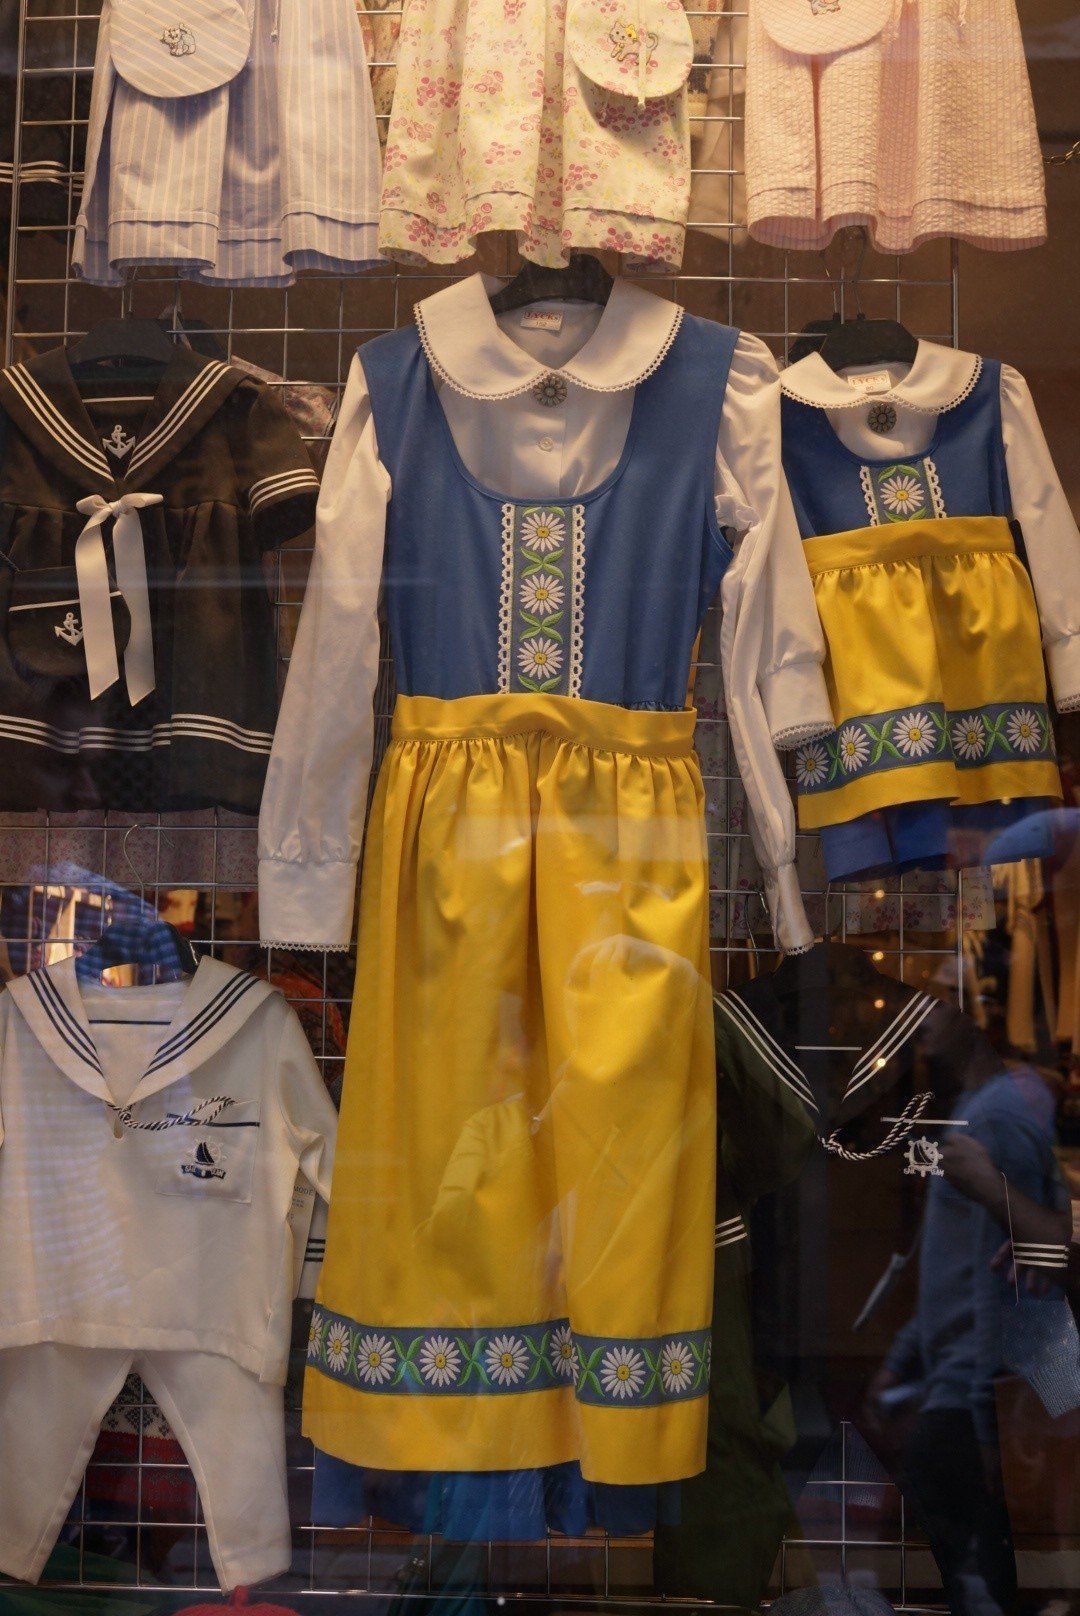 スウェーデンの民族衣装的な 可愛い色 国旗 と同じ配色のブルーと黄色 お花の可愛らしいデザインが北欧っぽくて イベントでなくてもちょっと着てみたい Misa Note